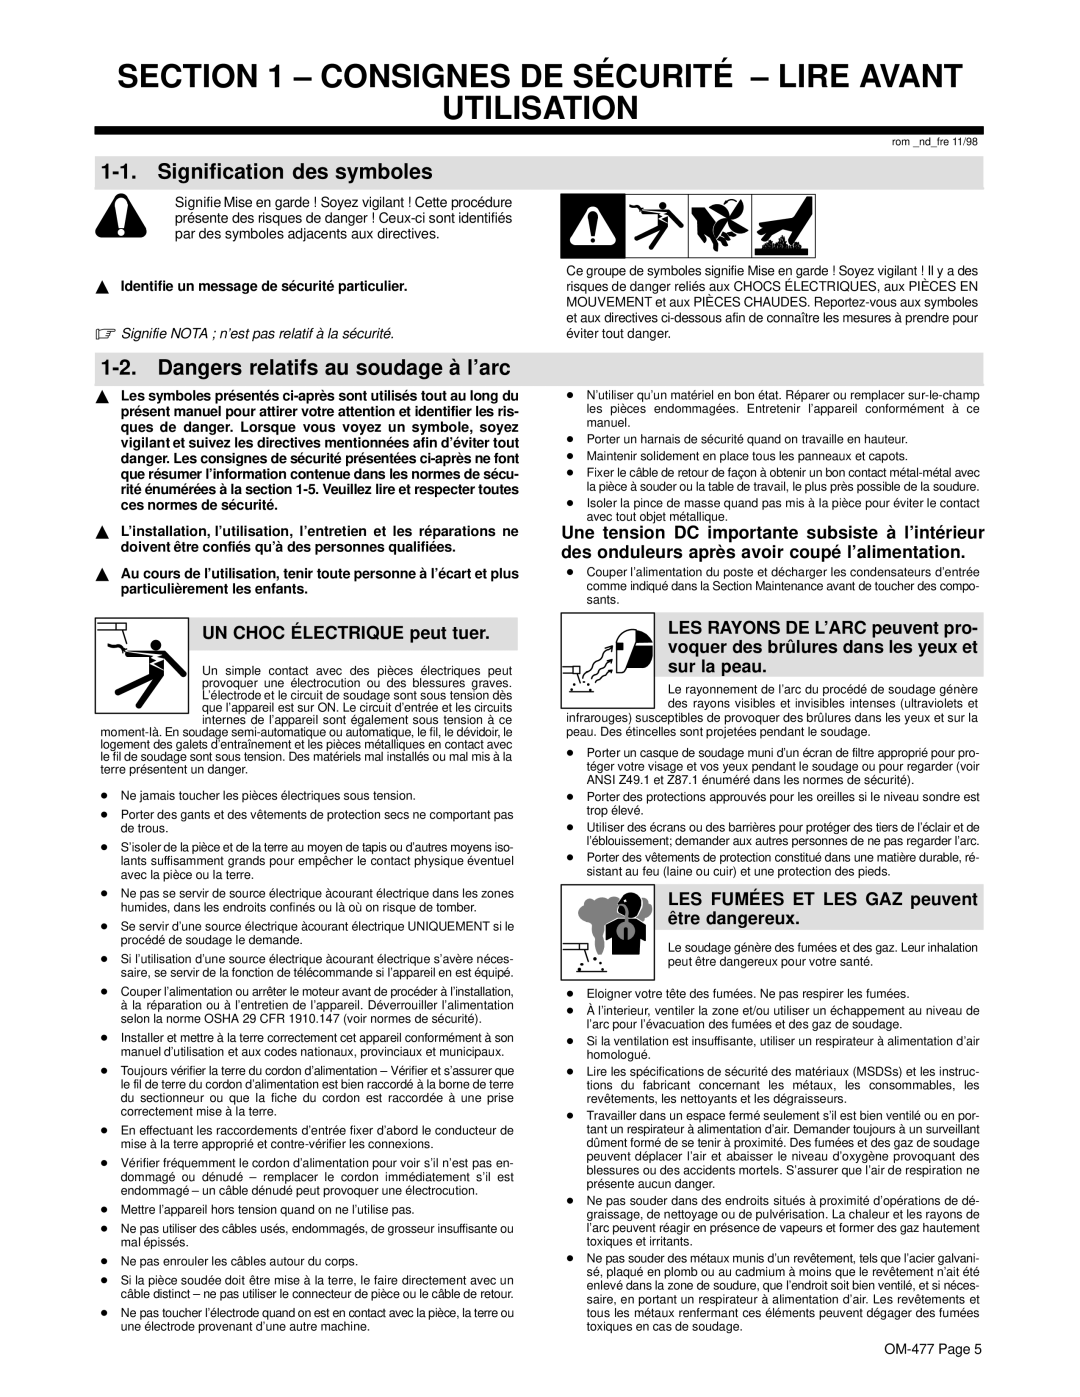 Miller Electric Big 40G manual Consignes DE SÉ Curité Lire Avant Utilisation, Signification des symboles 